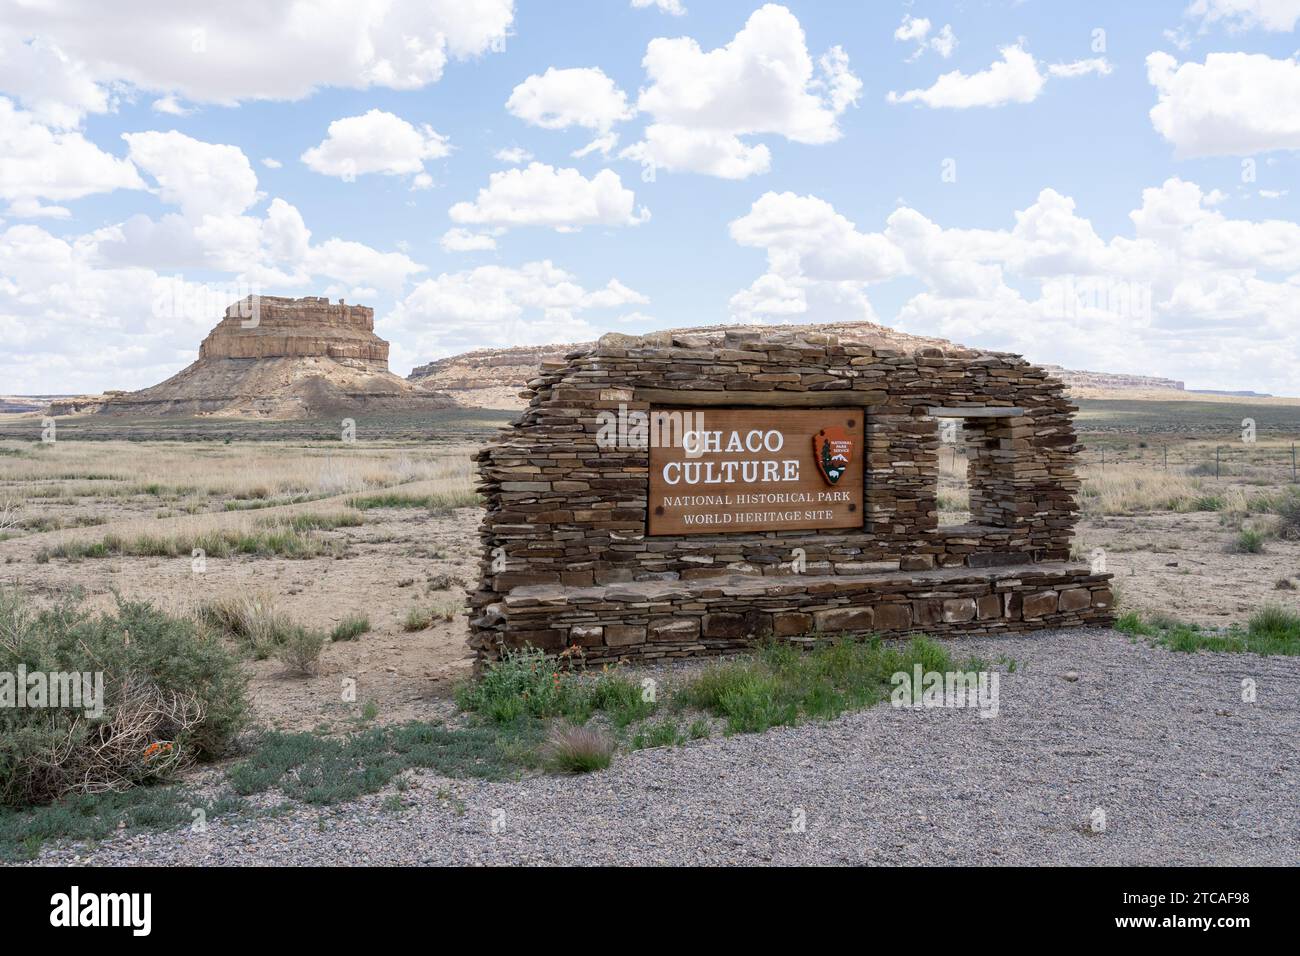 Il cartello d'ingresso del Parco storico Nazionale della Cultura di Chaco nel New Mexico, Stati Uniti Foto Stock